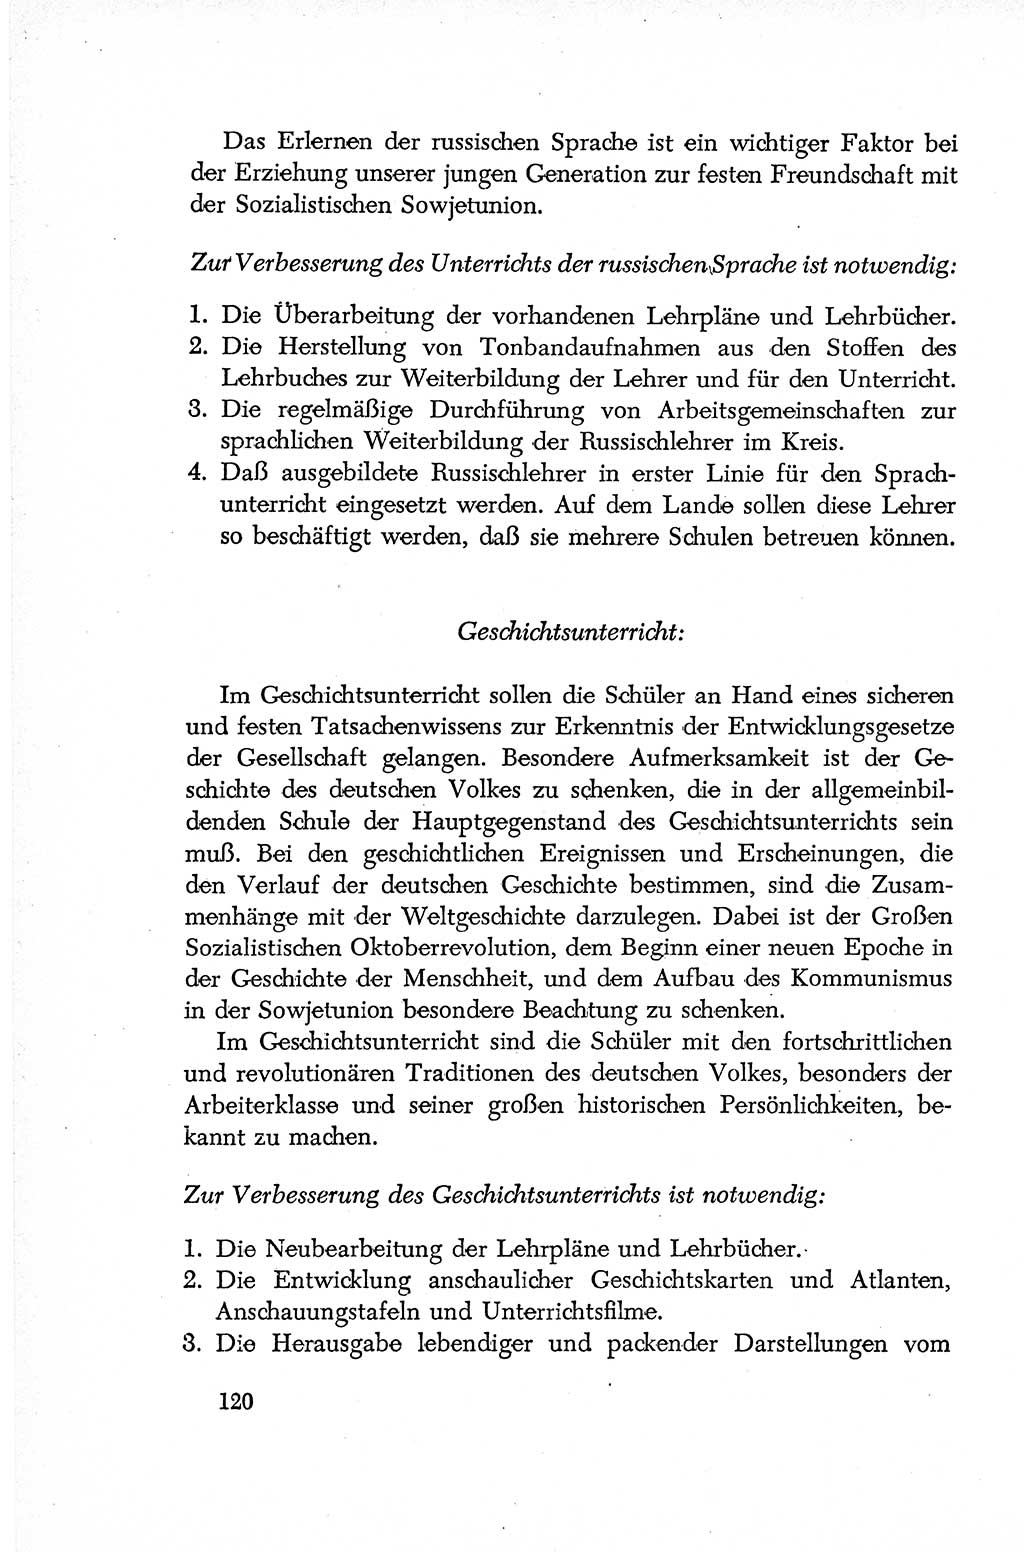 Dokumente der Sozialistischen Einheitspartei Deutschlands (SED) [Deutsche Demokratische Republik (DDR)] 1952-1953, Seite 120 (Dok. SED DDR 1952-1953, S. 120)